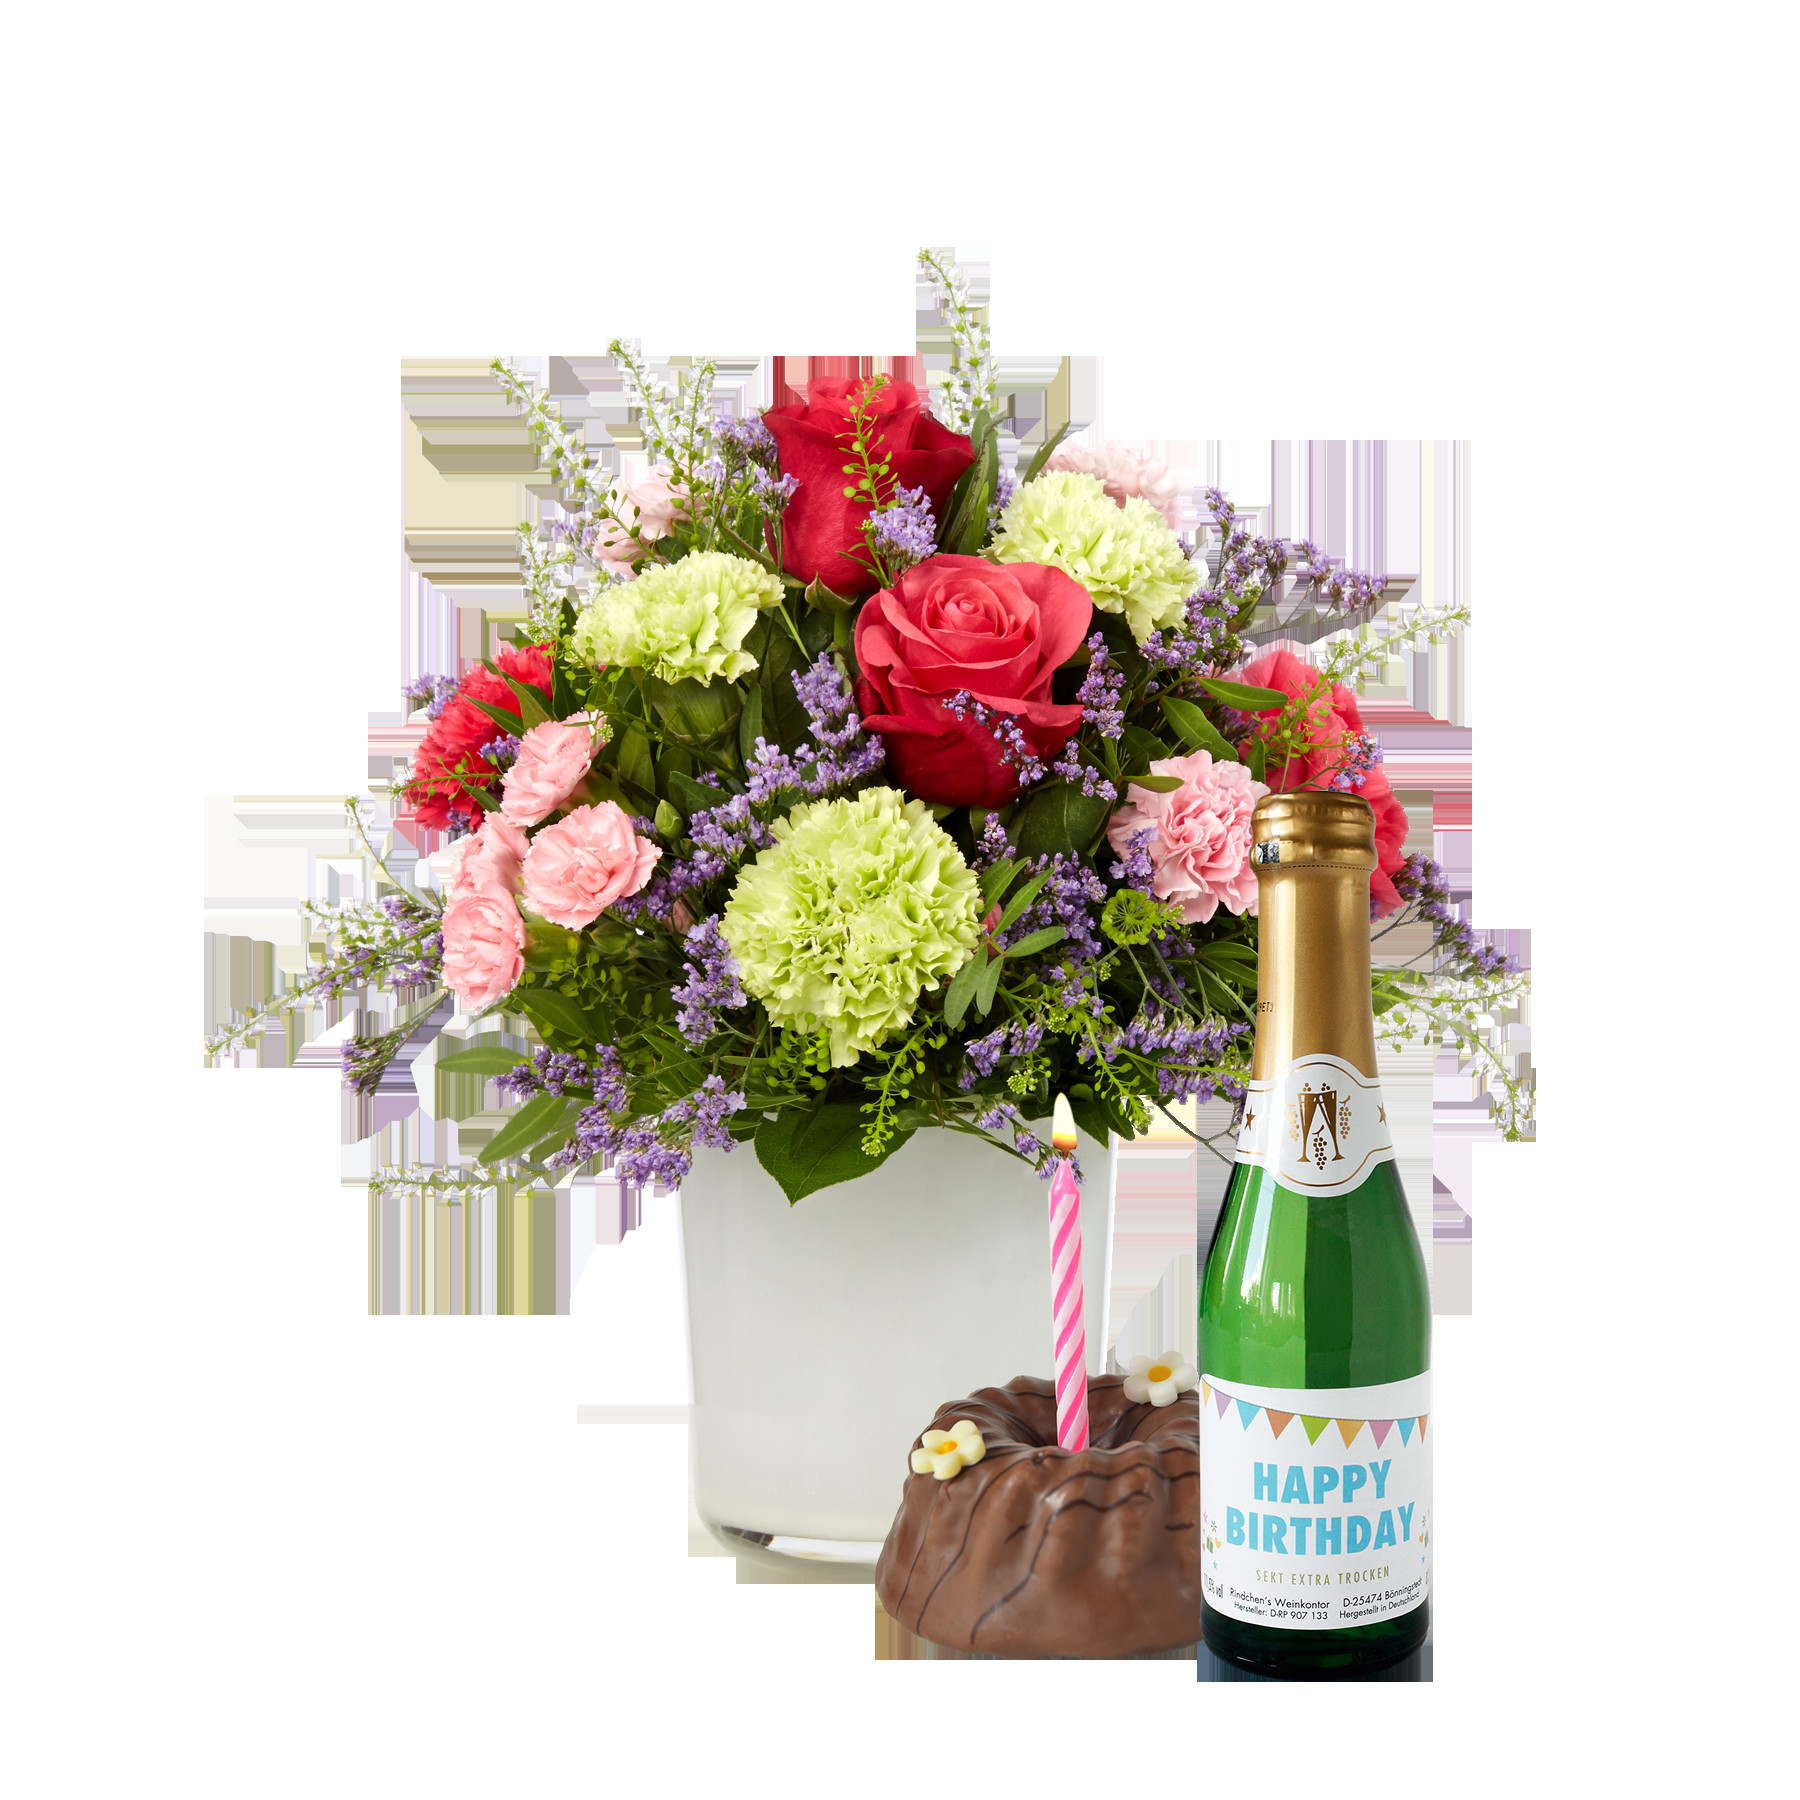 Blumen Zum Geburtstag Verschicken
 Blumen zum Geburtstag › Blumenversand Vergleich